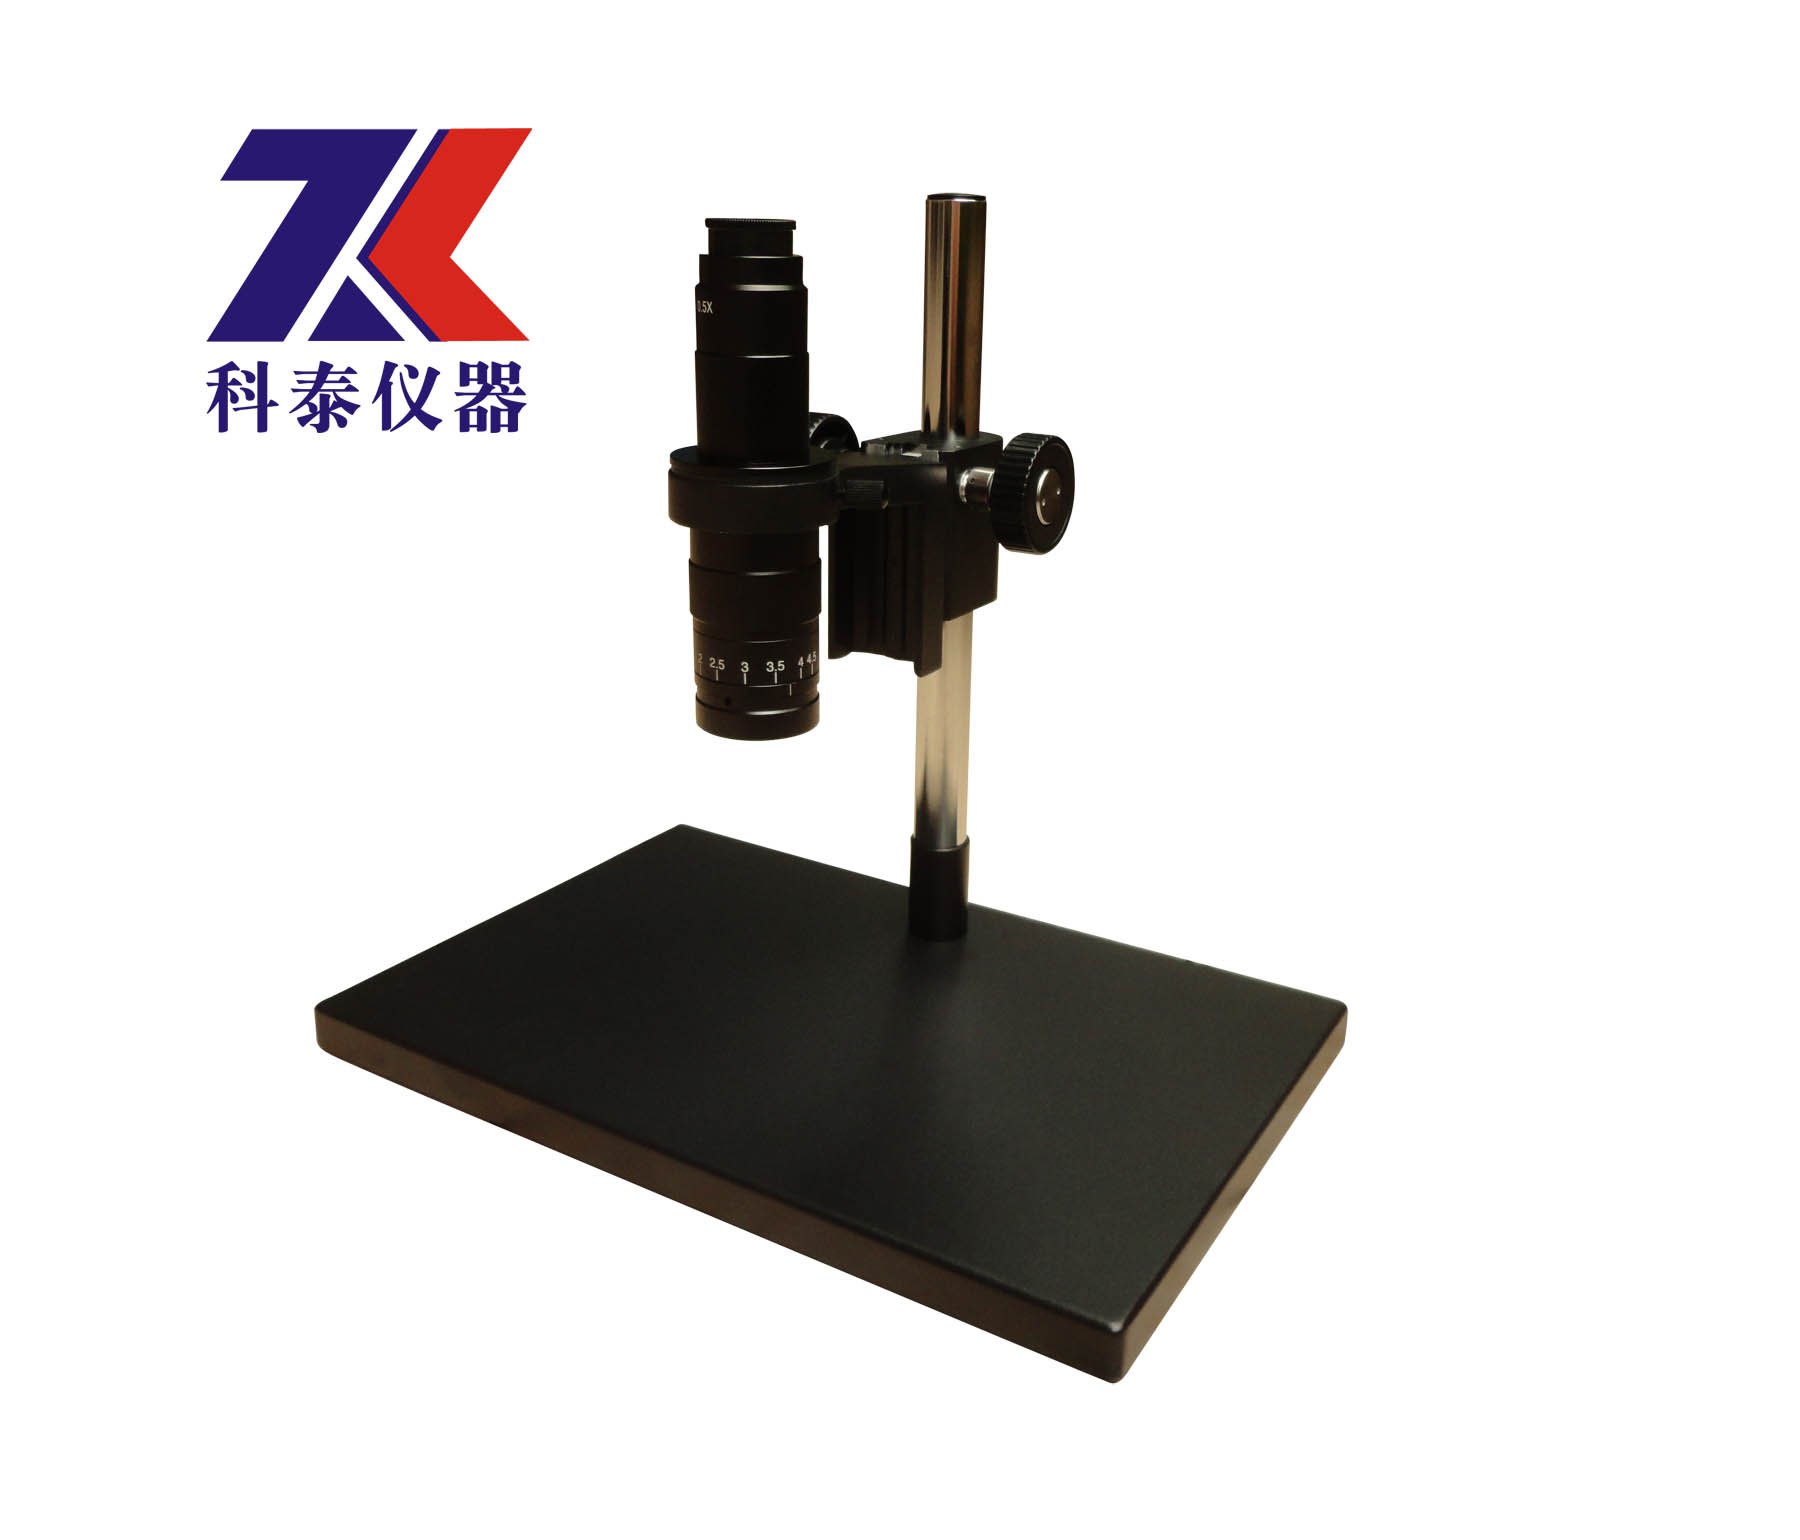 供应视频显微镜  高清工业显微镜  单筒视频显微镜 大量现货供应 KT-10A视频显微镜 10A工业显微镜